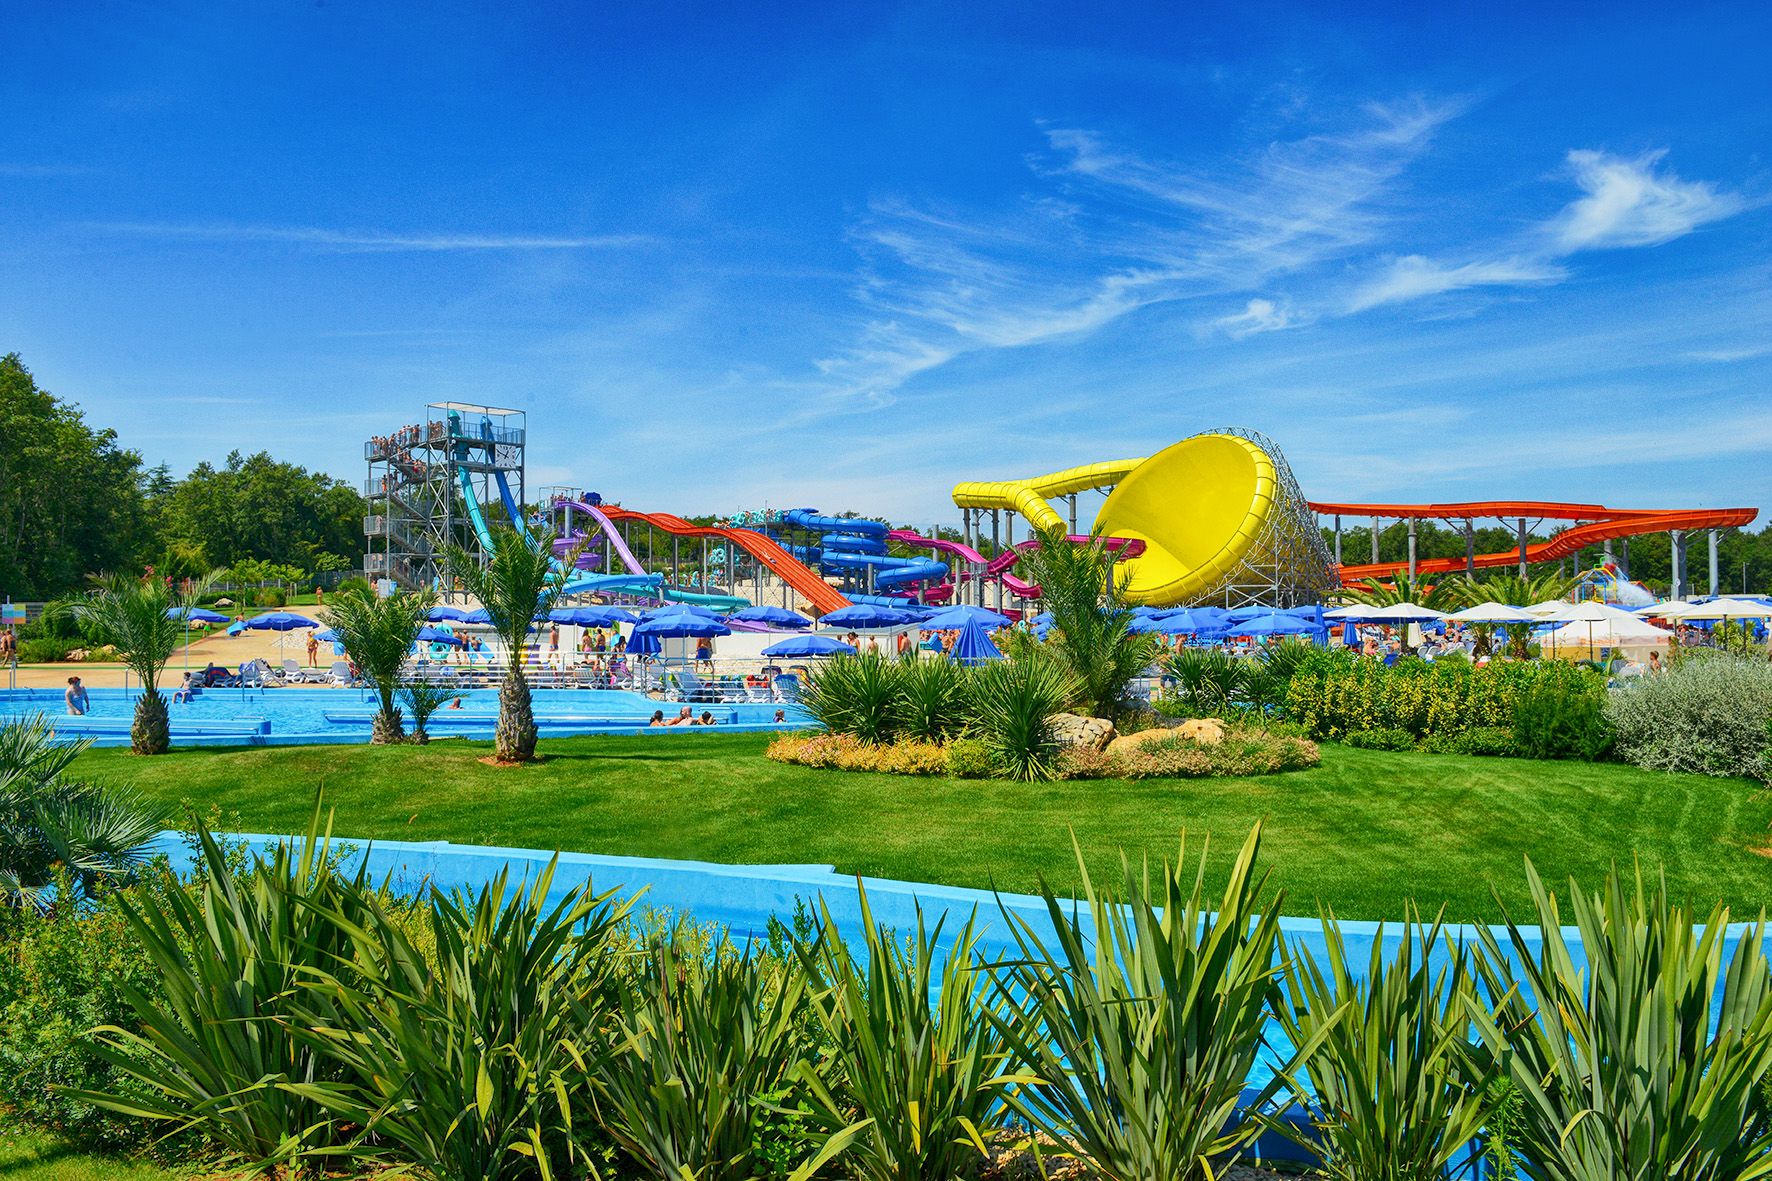 Aquapark Aquacolors Poreč – Croatia’s Largest Water Park